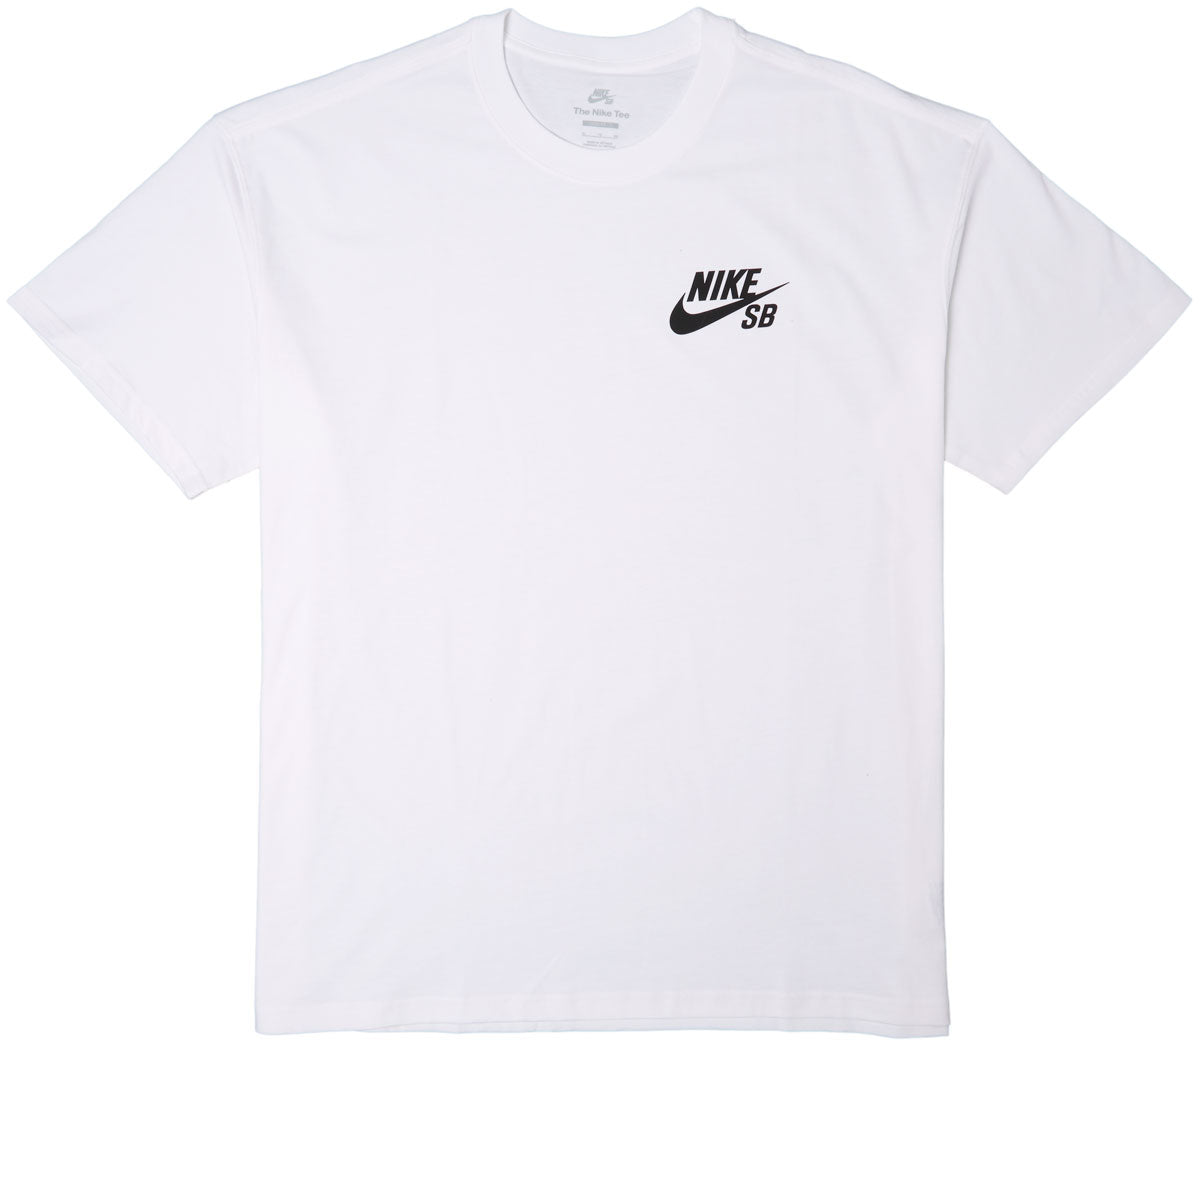 Nike SB New Logo - White/Black CCS